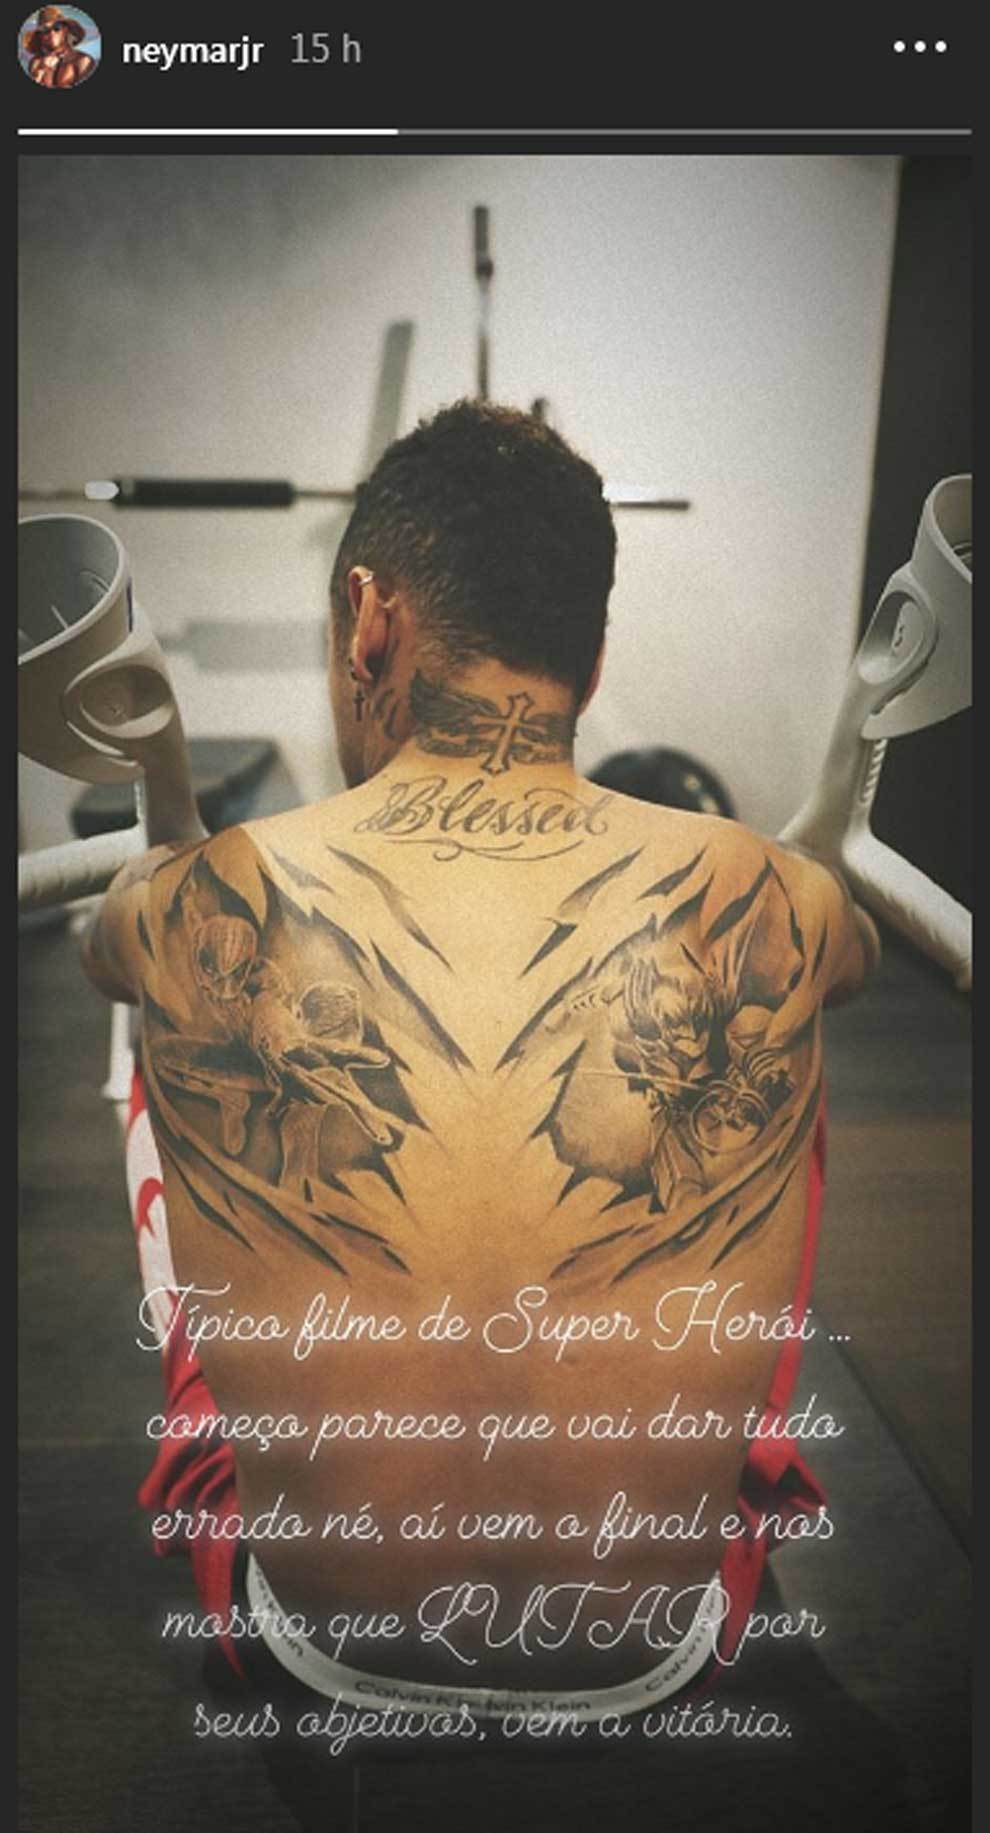 Imagen y mensaje de Neymar, con su espalda tatuada con superhroes,...